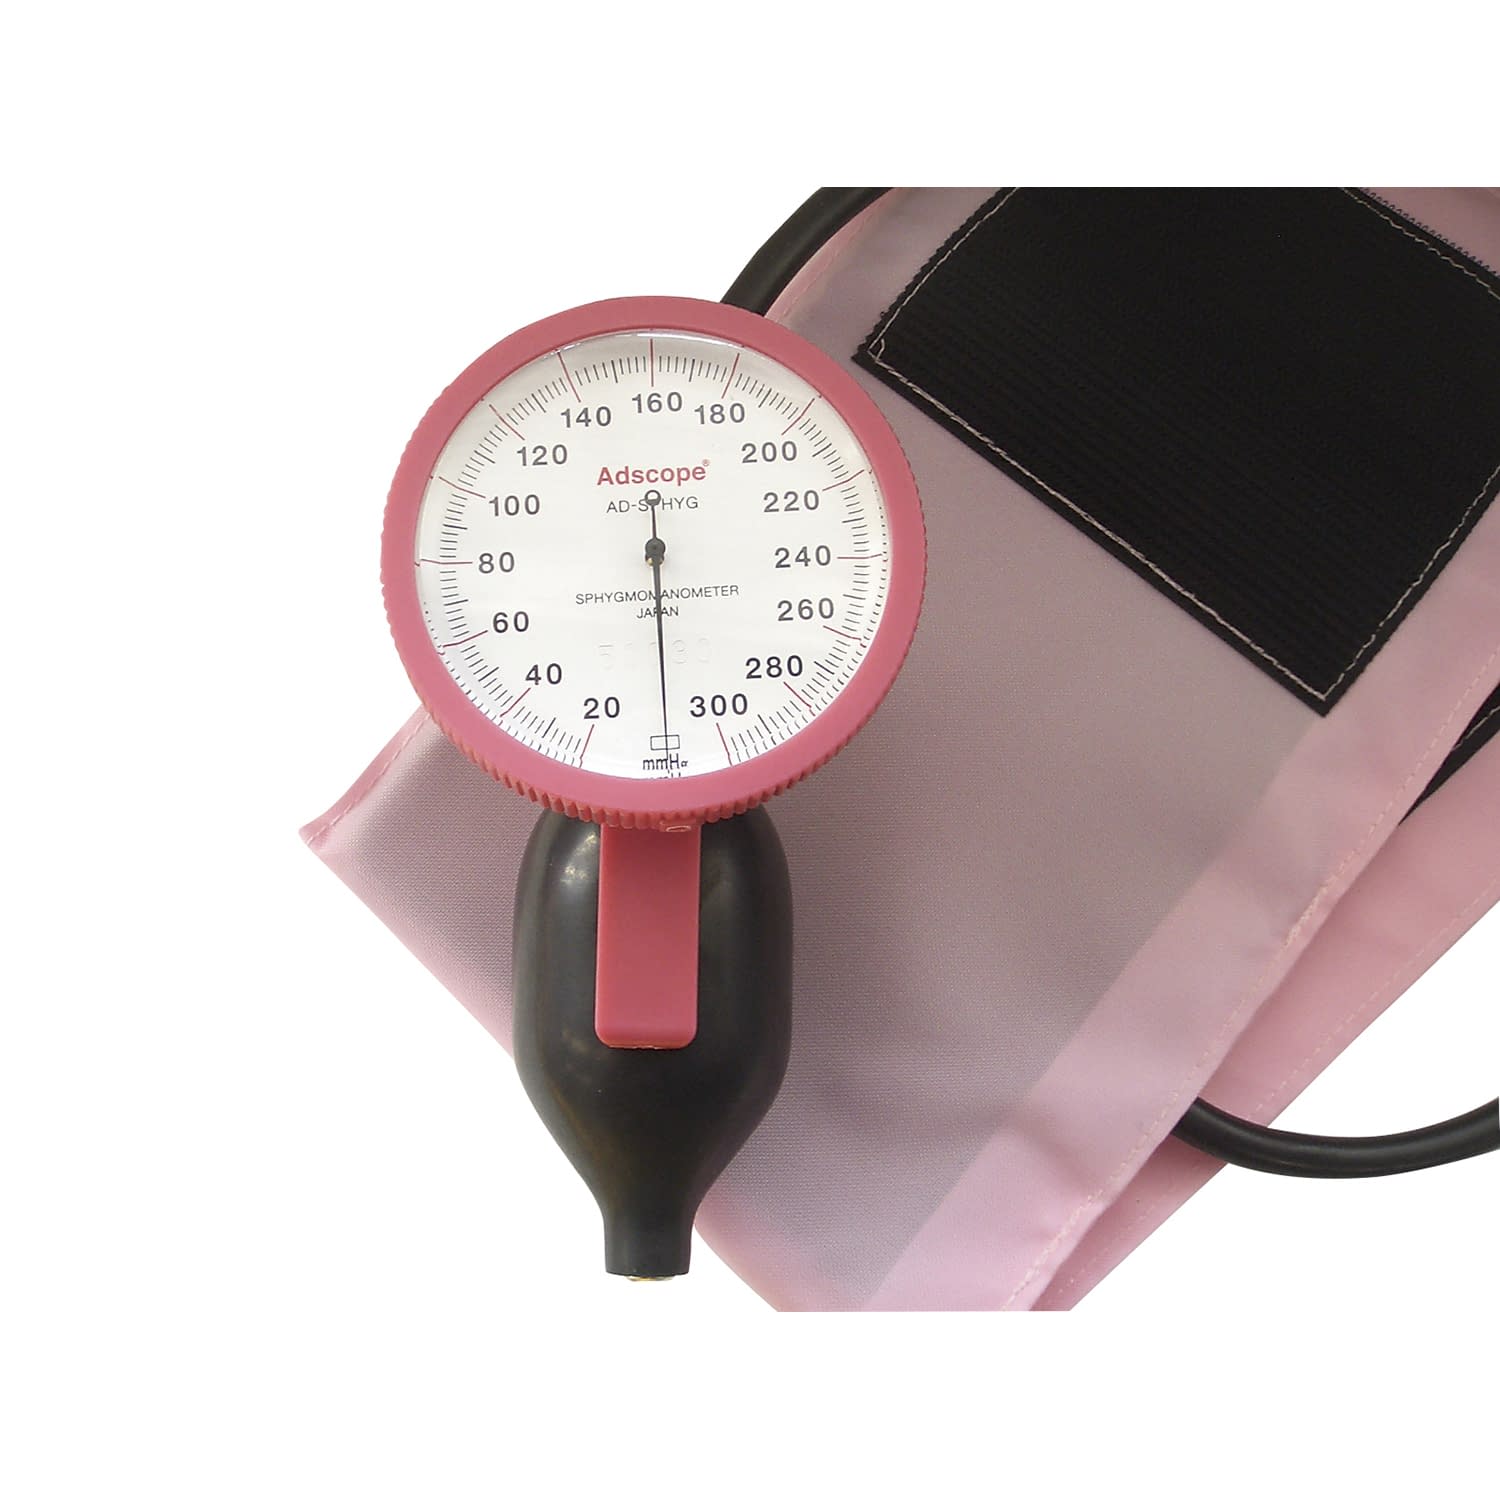 (23-7093-00)ラージゲージアネロイド血圧計 ADC-226P(ﾋﾟﾝｸ)ﾜﾝﾊﾝﾄﾞ ﾗｰｼﾞｹﾞｰｼﾞｱﾈﾛｲﾄﾞｹﾂｱﾂｹ【1台単位】【2019年カタログ商品】